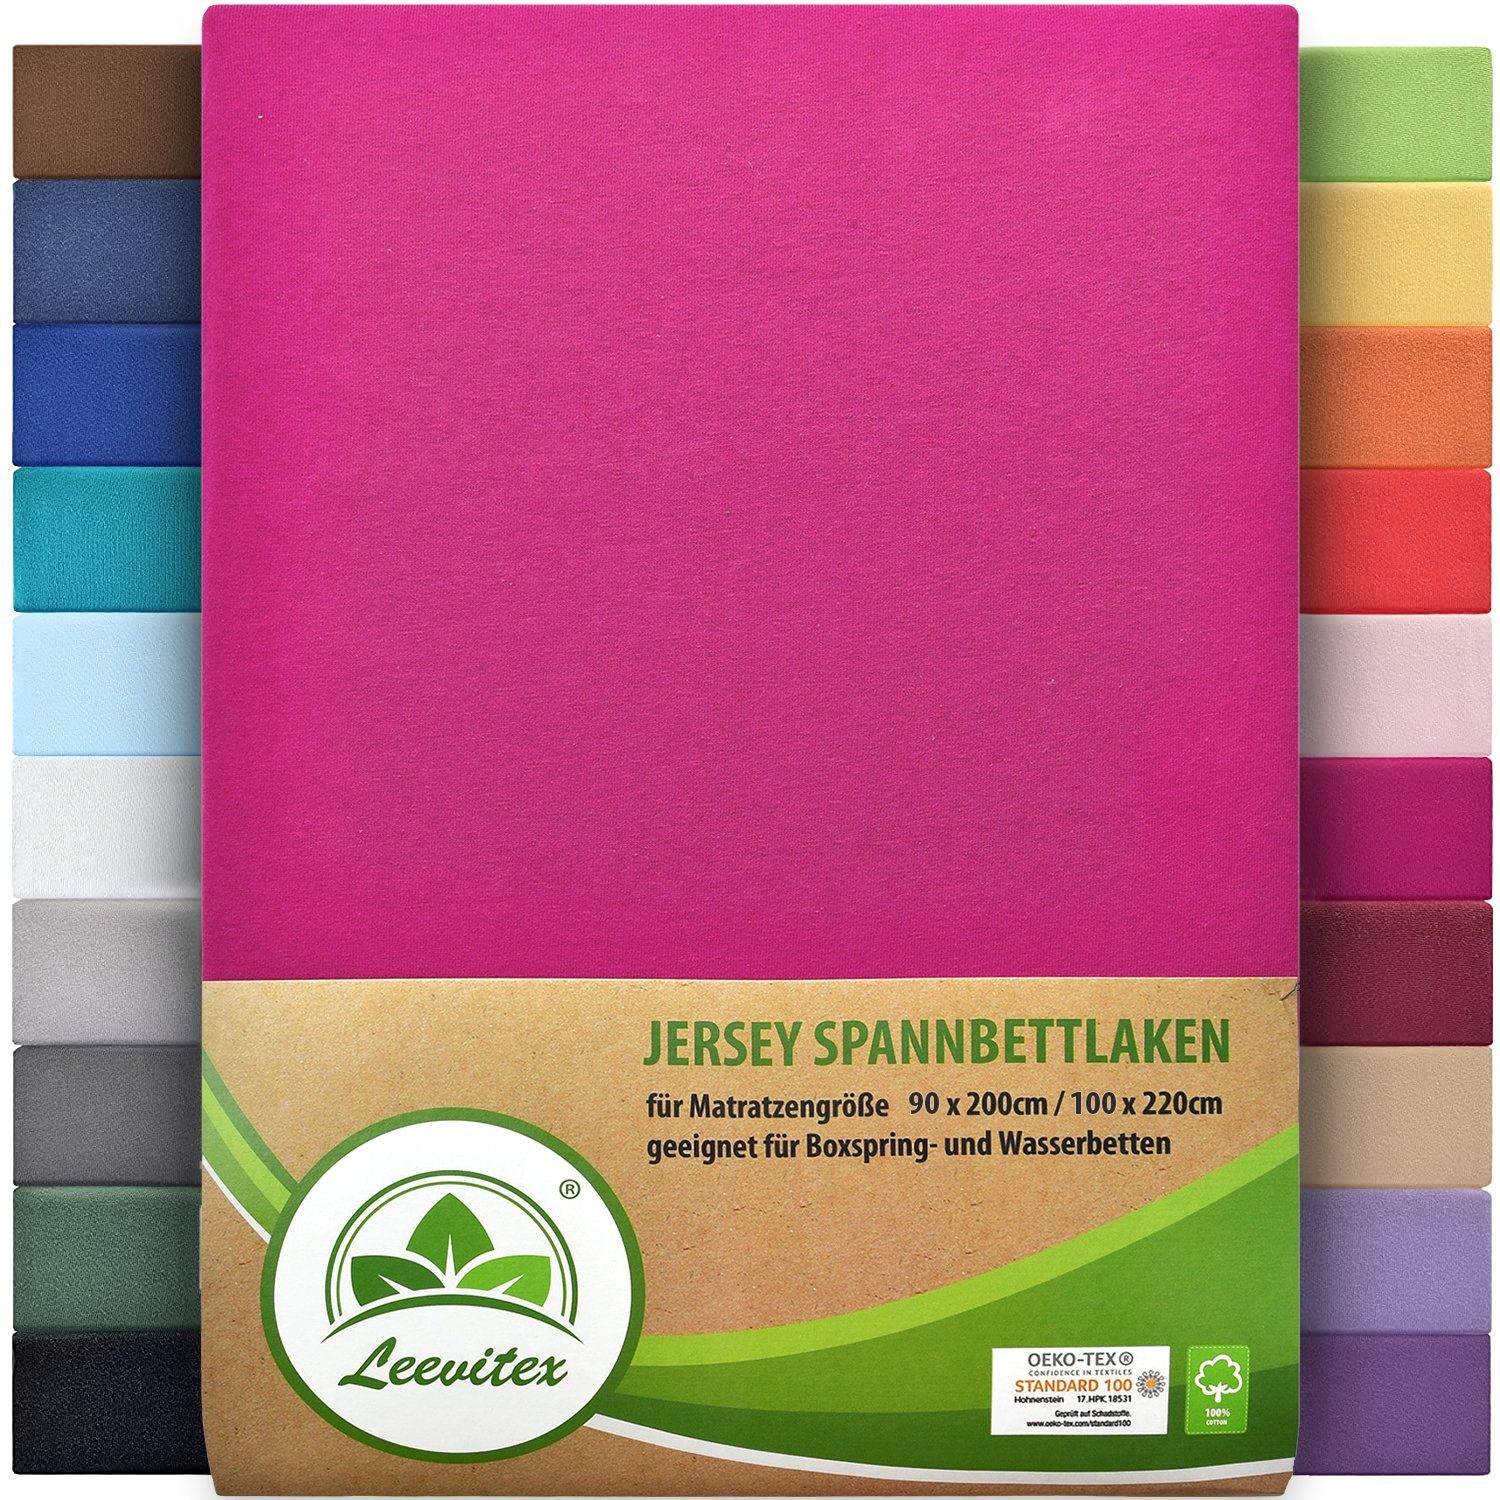 Spannbettlaken Premium 170, leevitex®, Gummizug: rundum, schwer und dick, 100% Jersey-Baumwolle, auch Boxspringbett geeignet Pink / Magenta